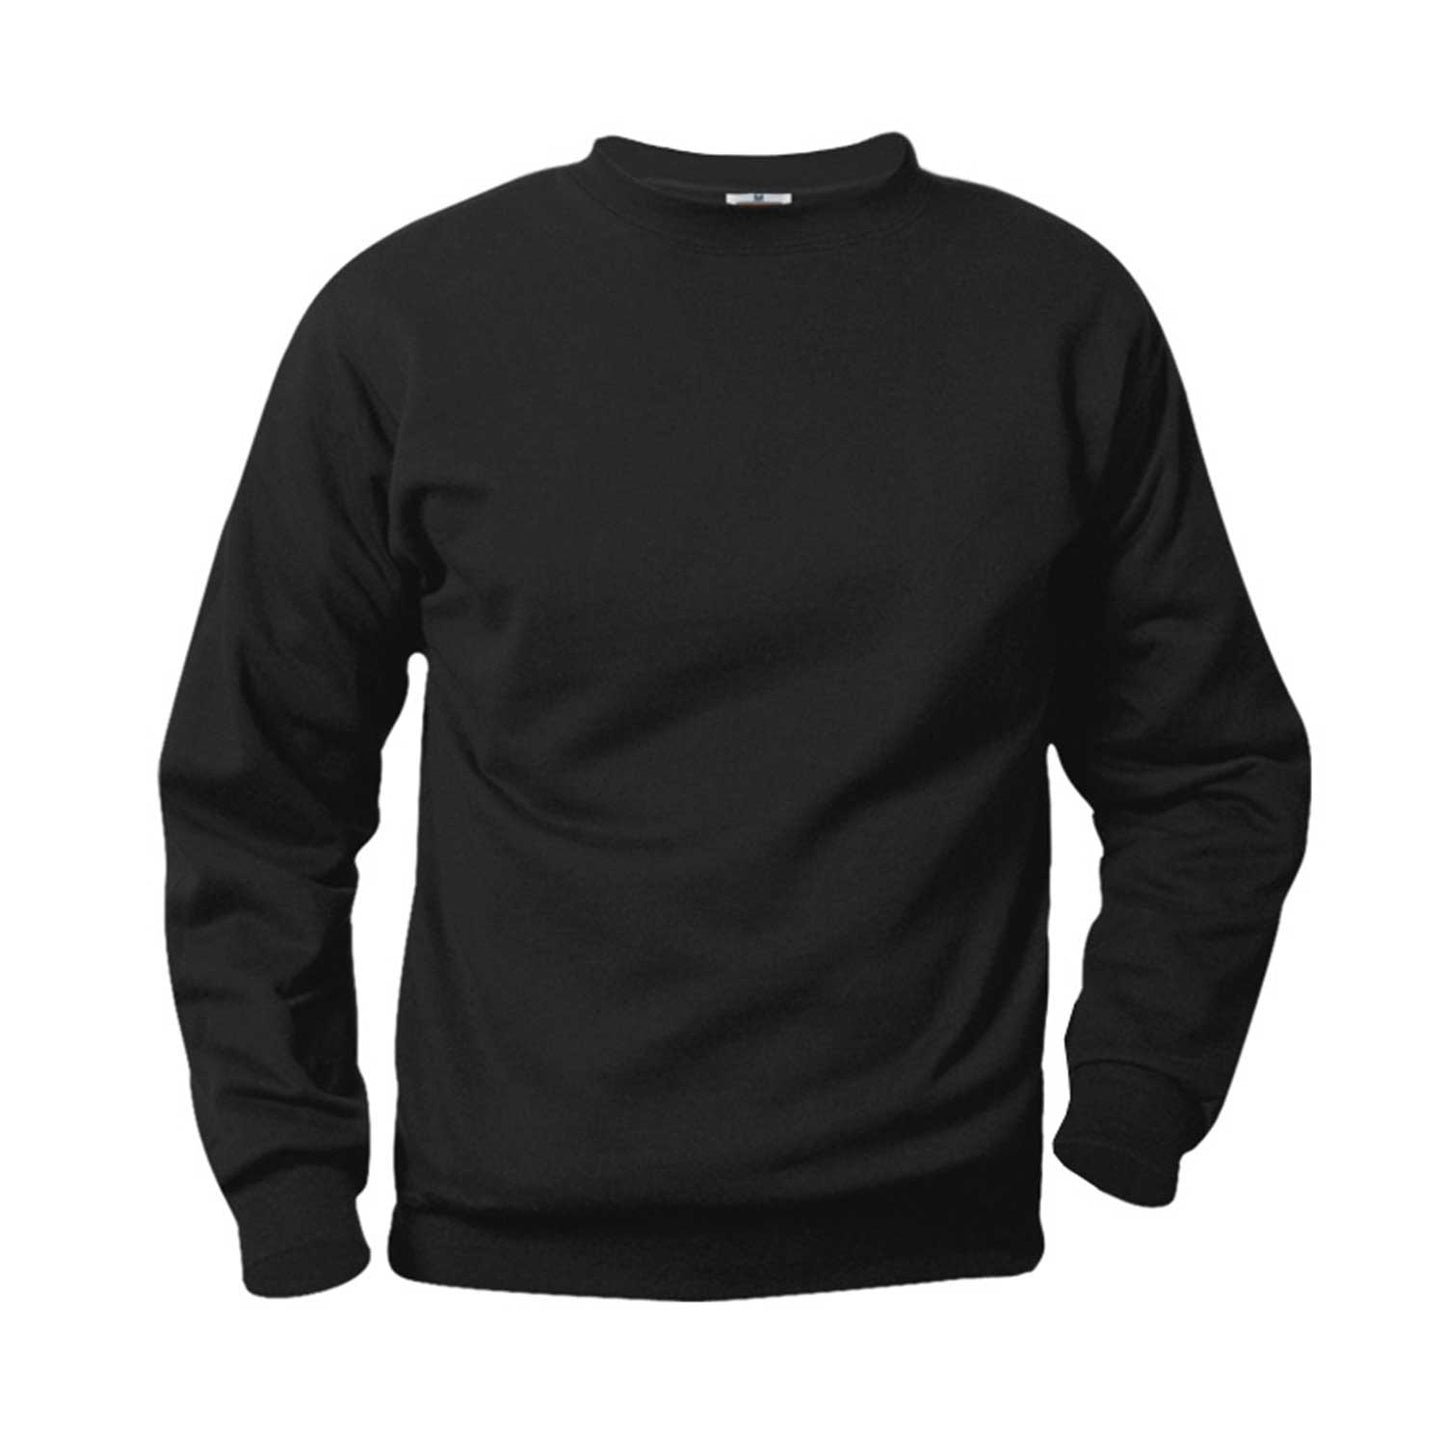 Unisex Crewneck Fleece Sweatshirt w/Logo - 1113